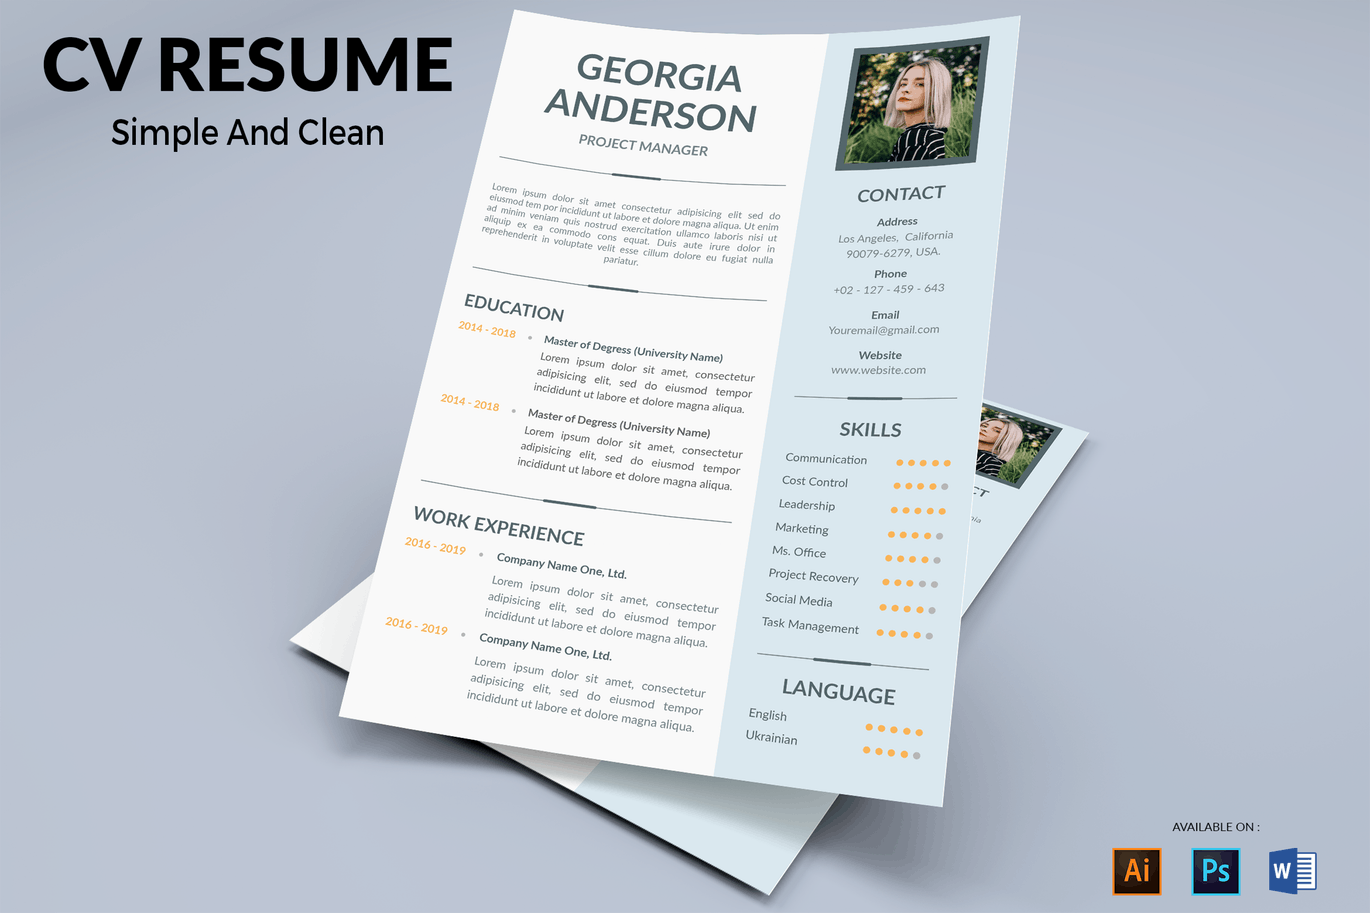 项目经理二合一专业大洋岛精选简历模板 CV Resume Professional插图